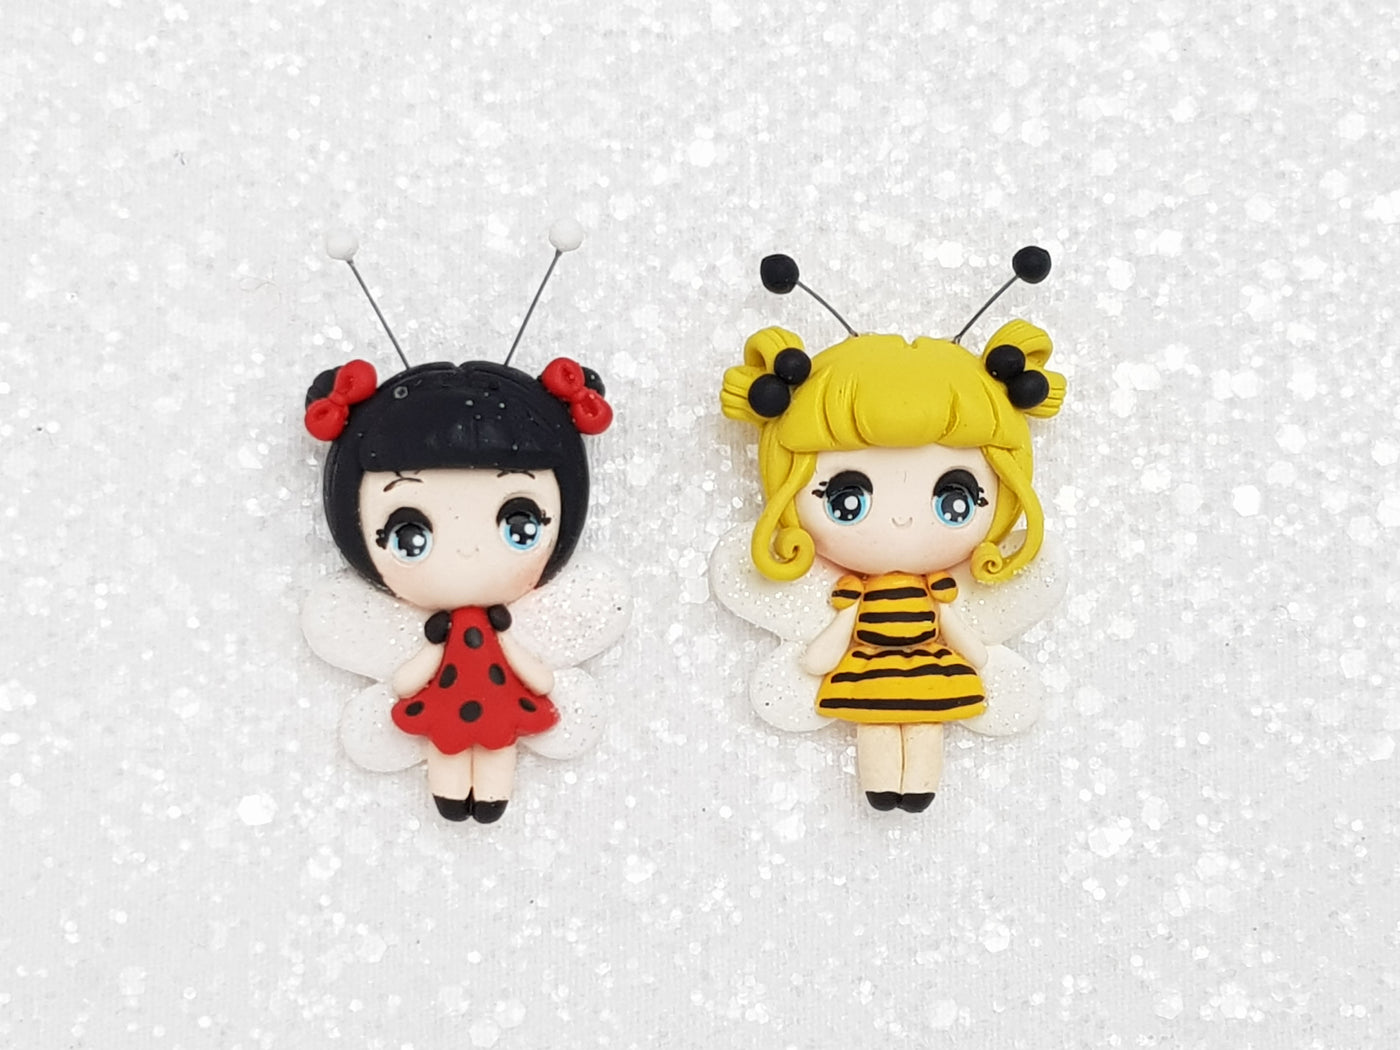 Handmade Clay Charm - New Big Eyes Bee, Ladybug - Crafty Mood